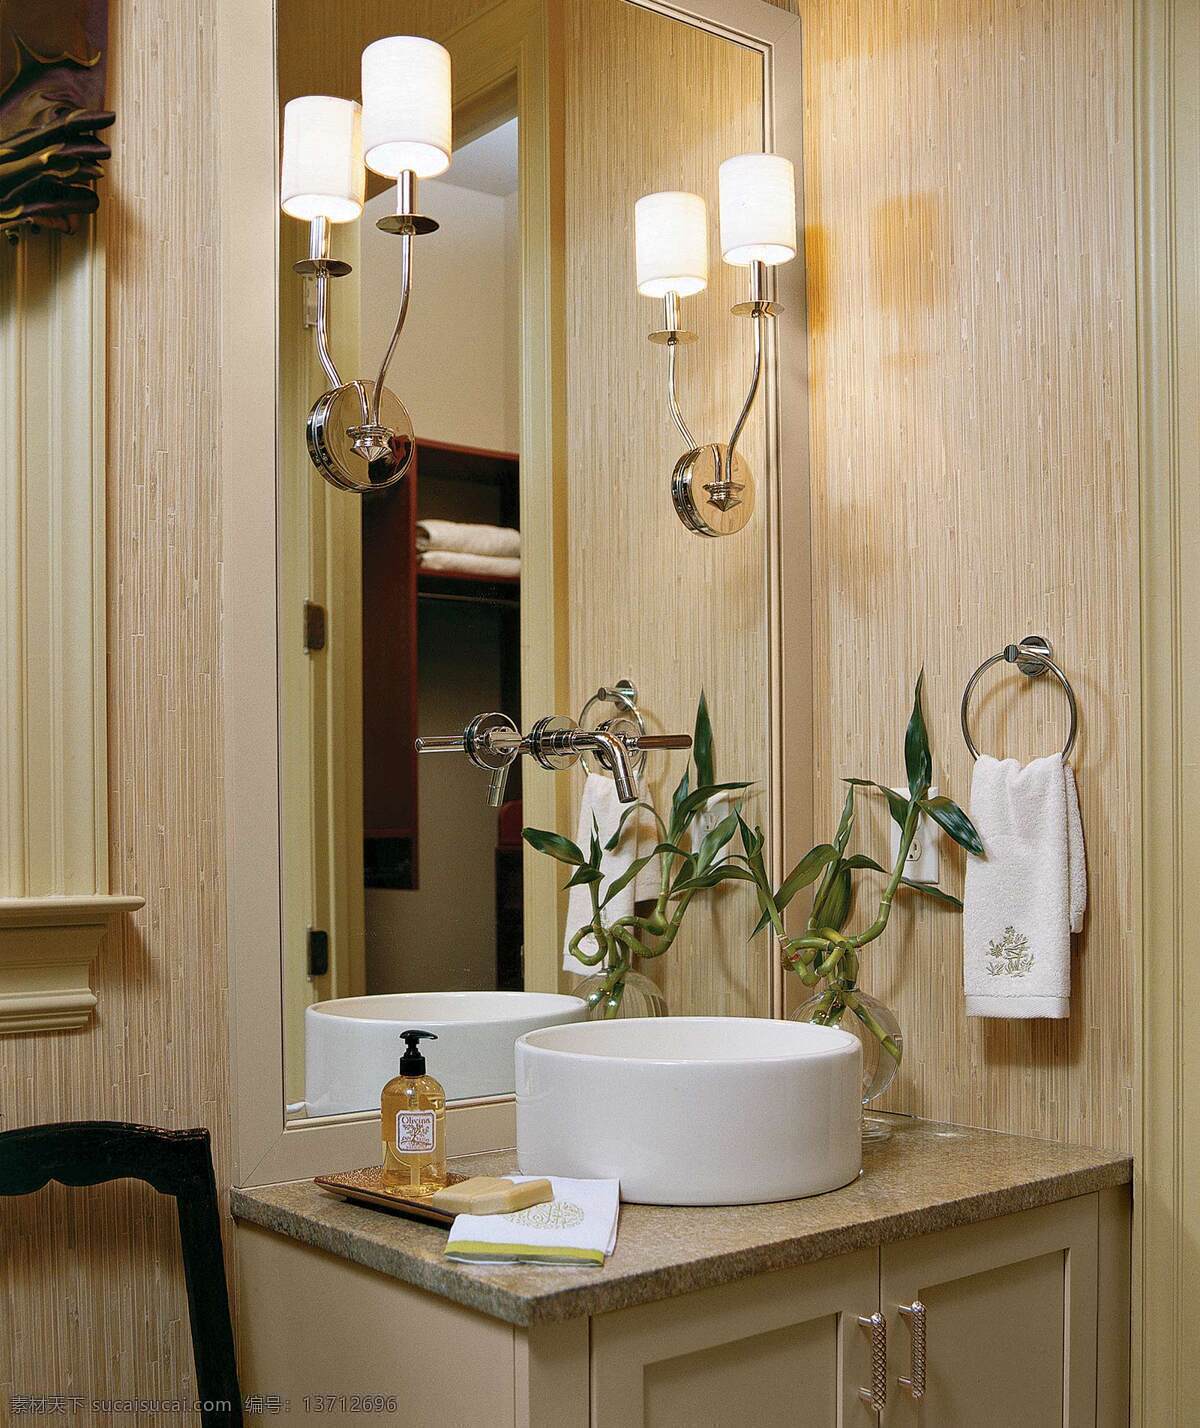 中式 木制 背景 盥洗室 效果图 吊顶 镜子 木制背景墙 洗手台